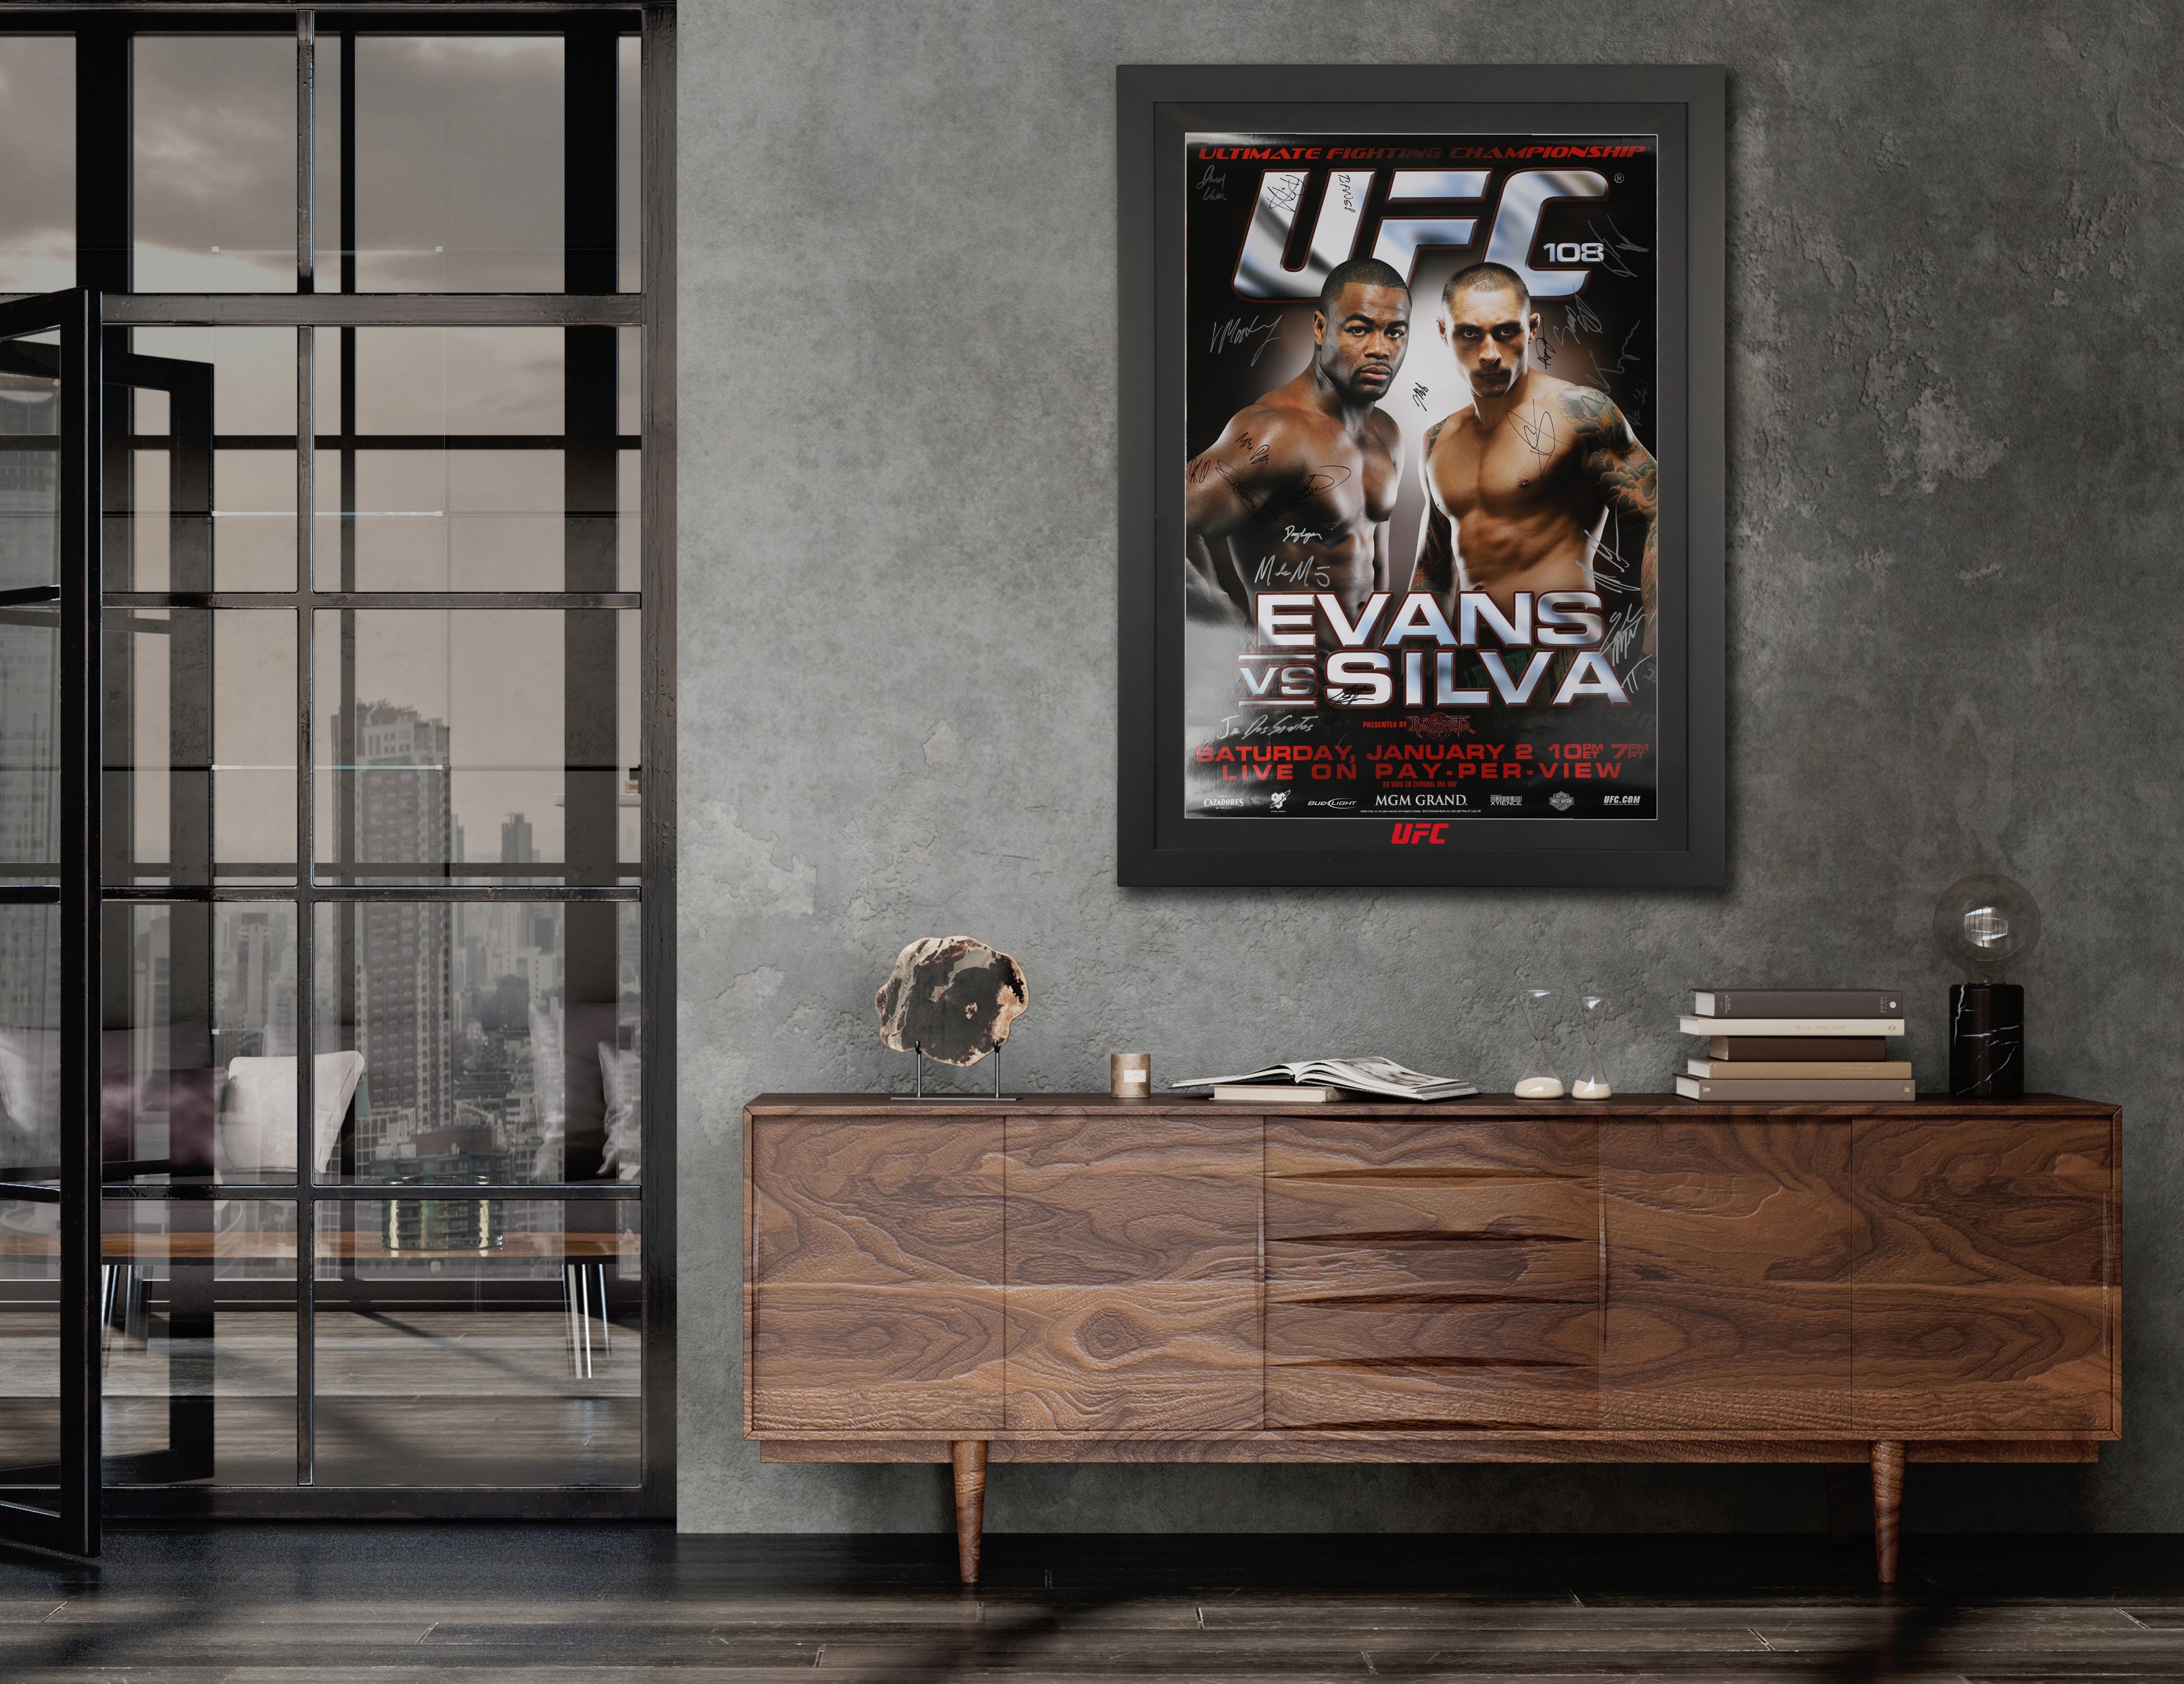 UFC 108: Evans vs Silva Autographed Event Poster